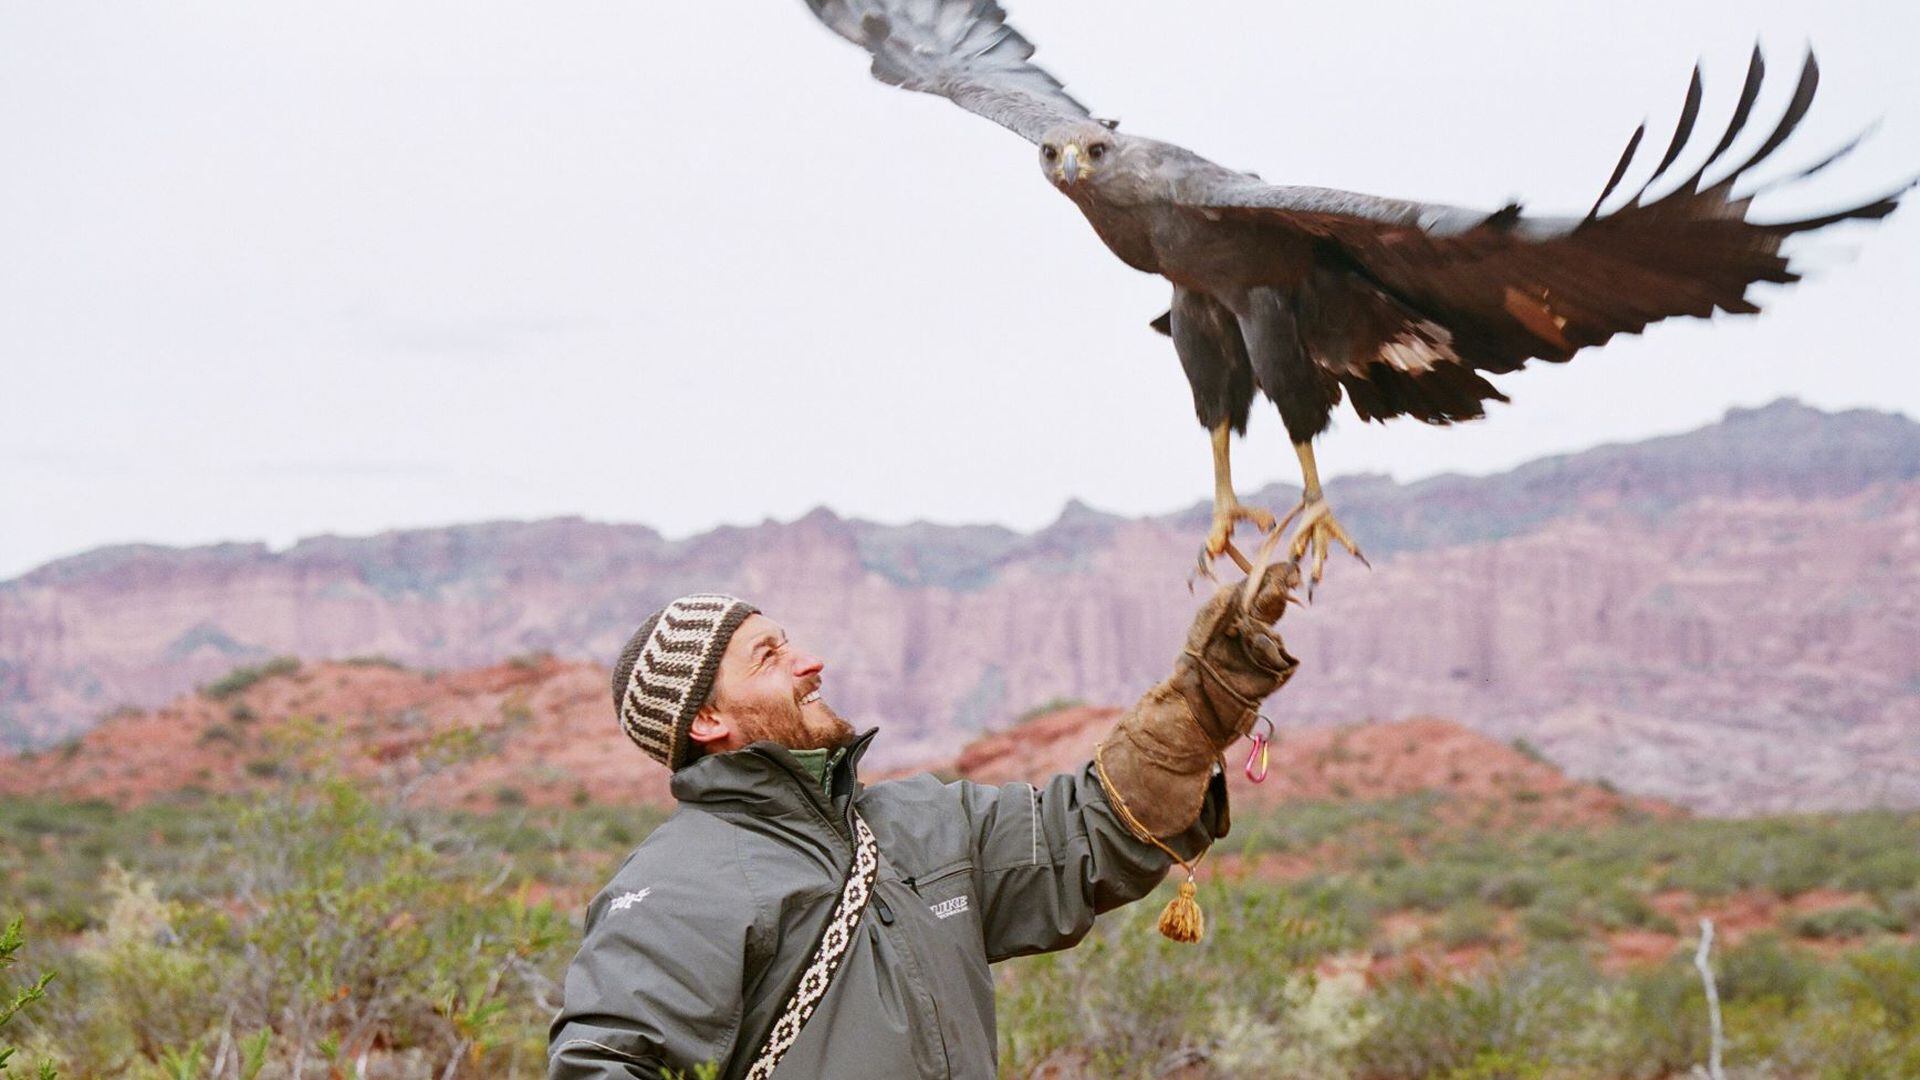 “Héroes de la conservación”, serie emitida por National Geographic, cuenta con la narración de Ricardo Darín y refleja la acción de quienes conservan especies en extinción